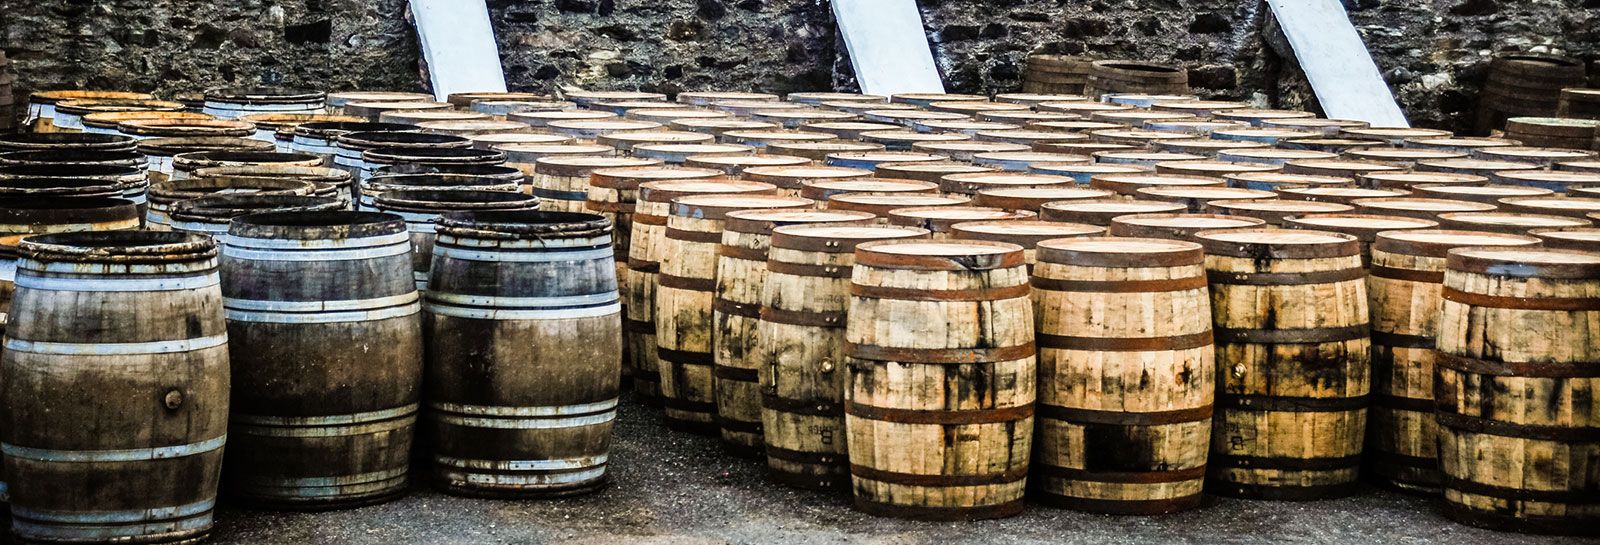 whisky barrels banner image